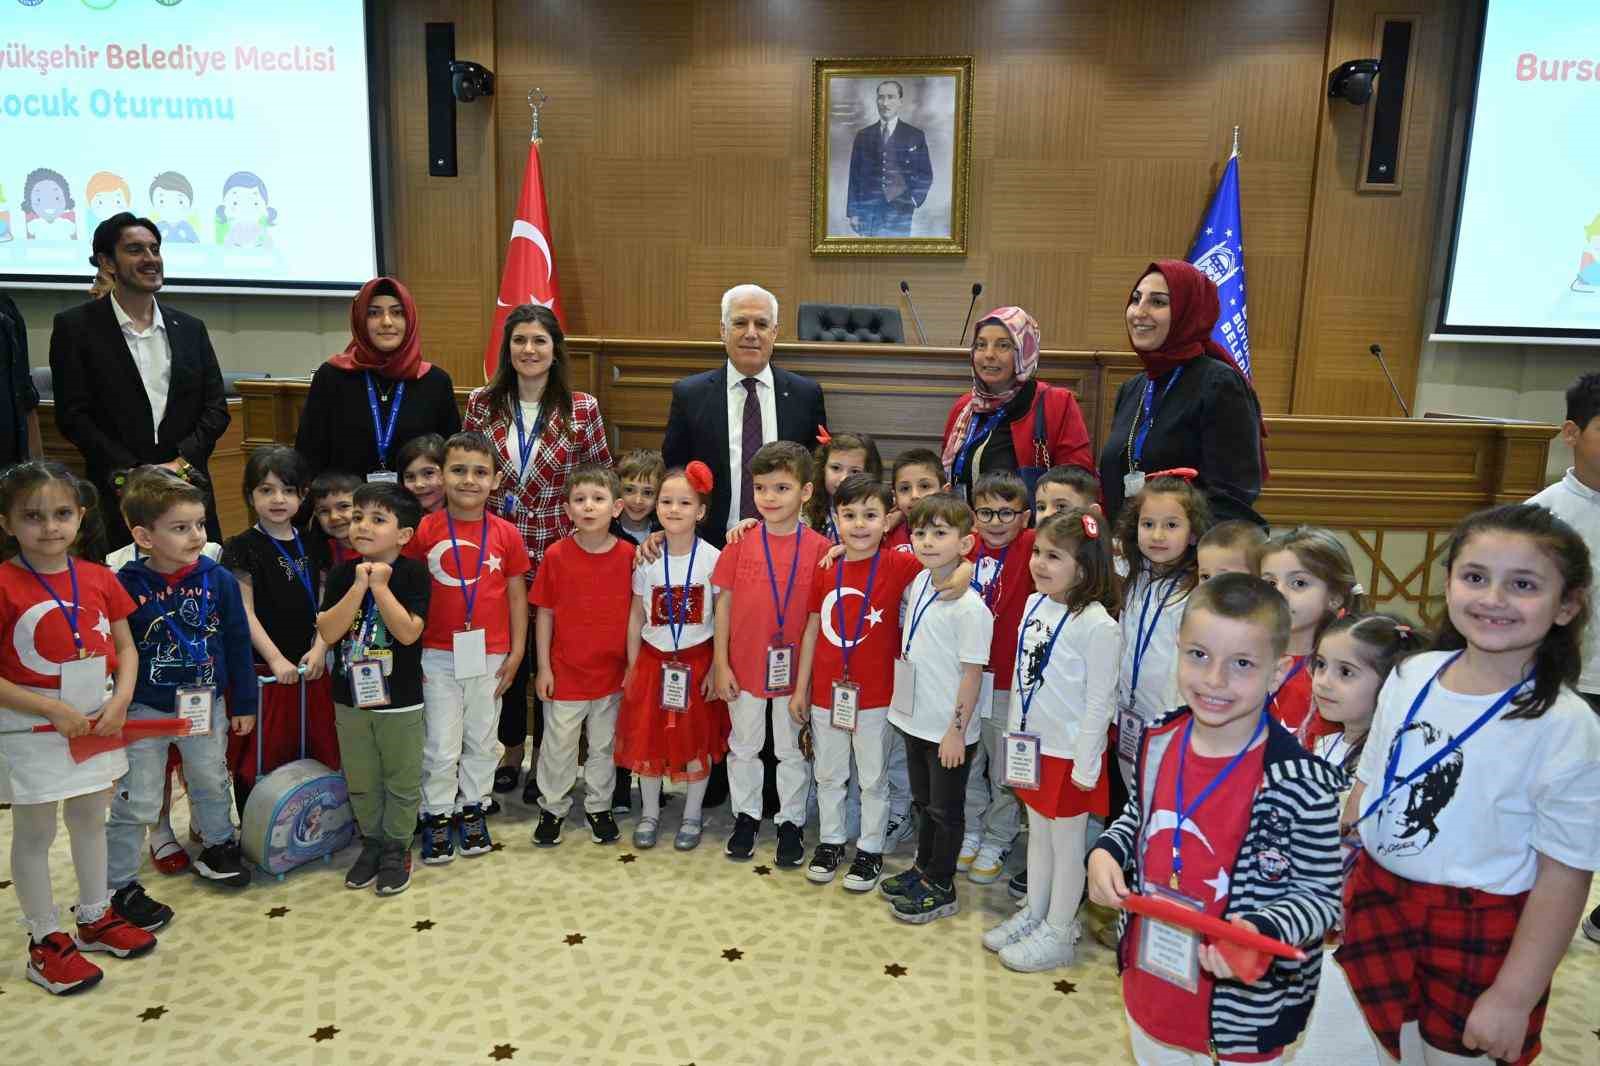 Bursa Büyükşehir Meclisinde Söz Hakkı Çocukların